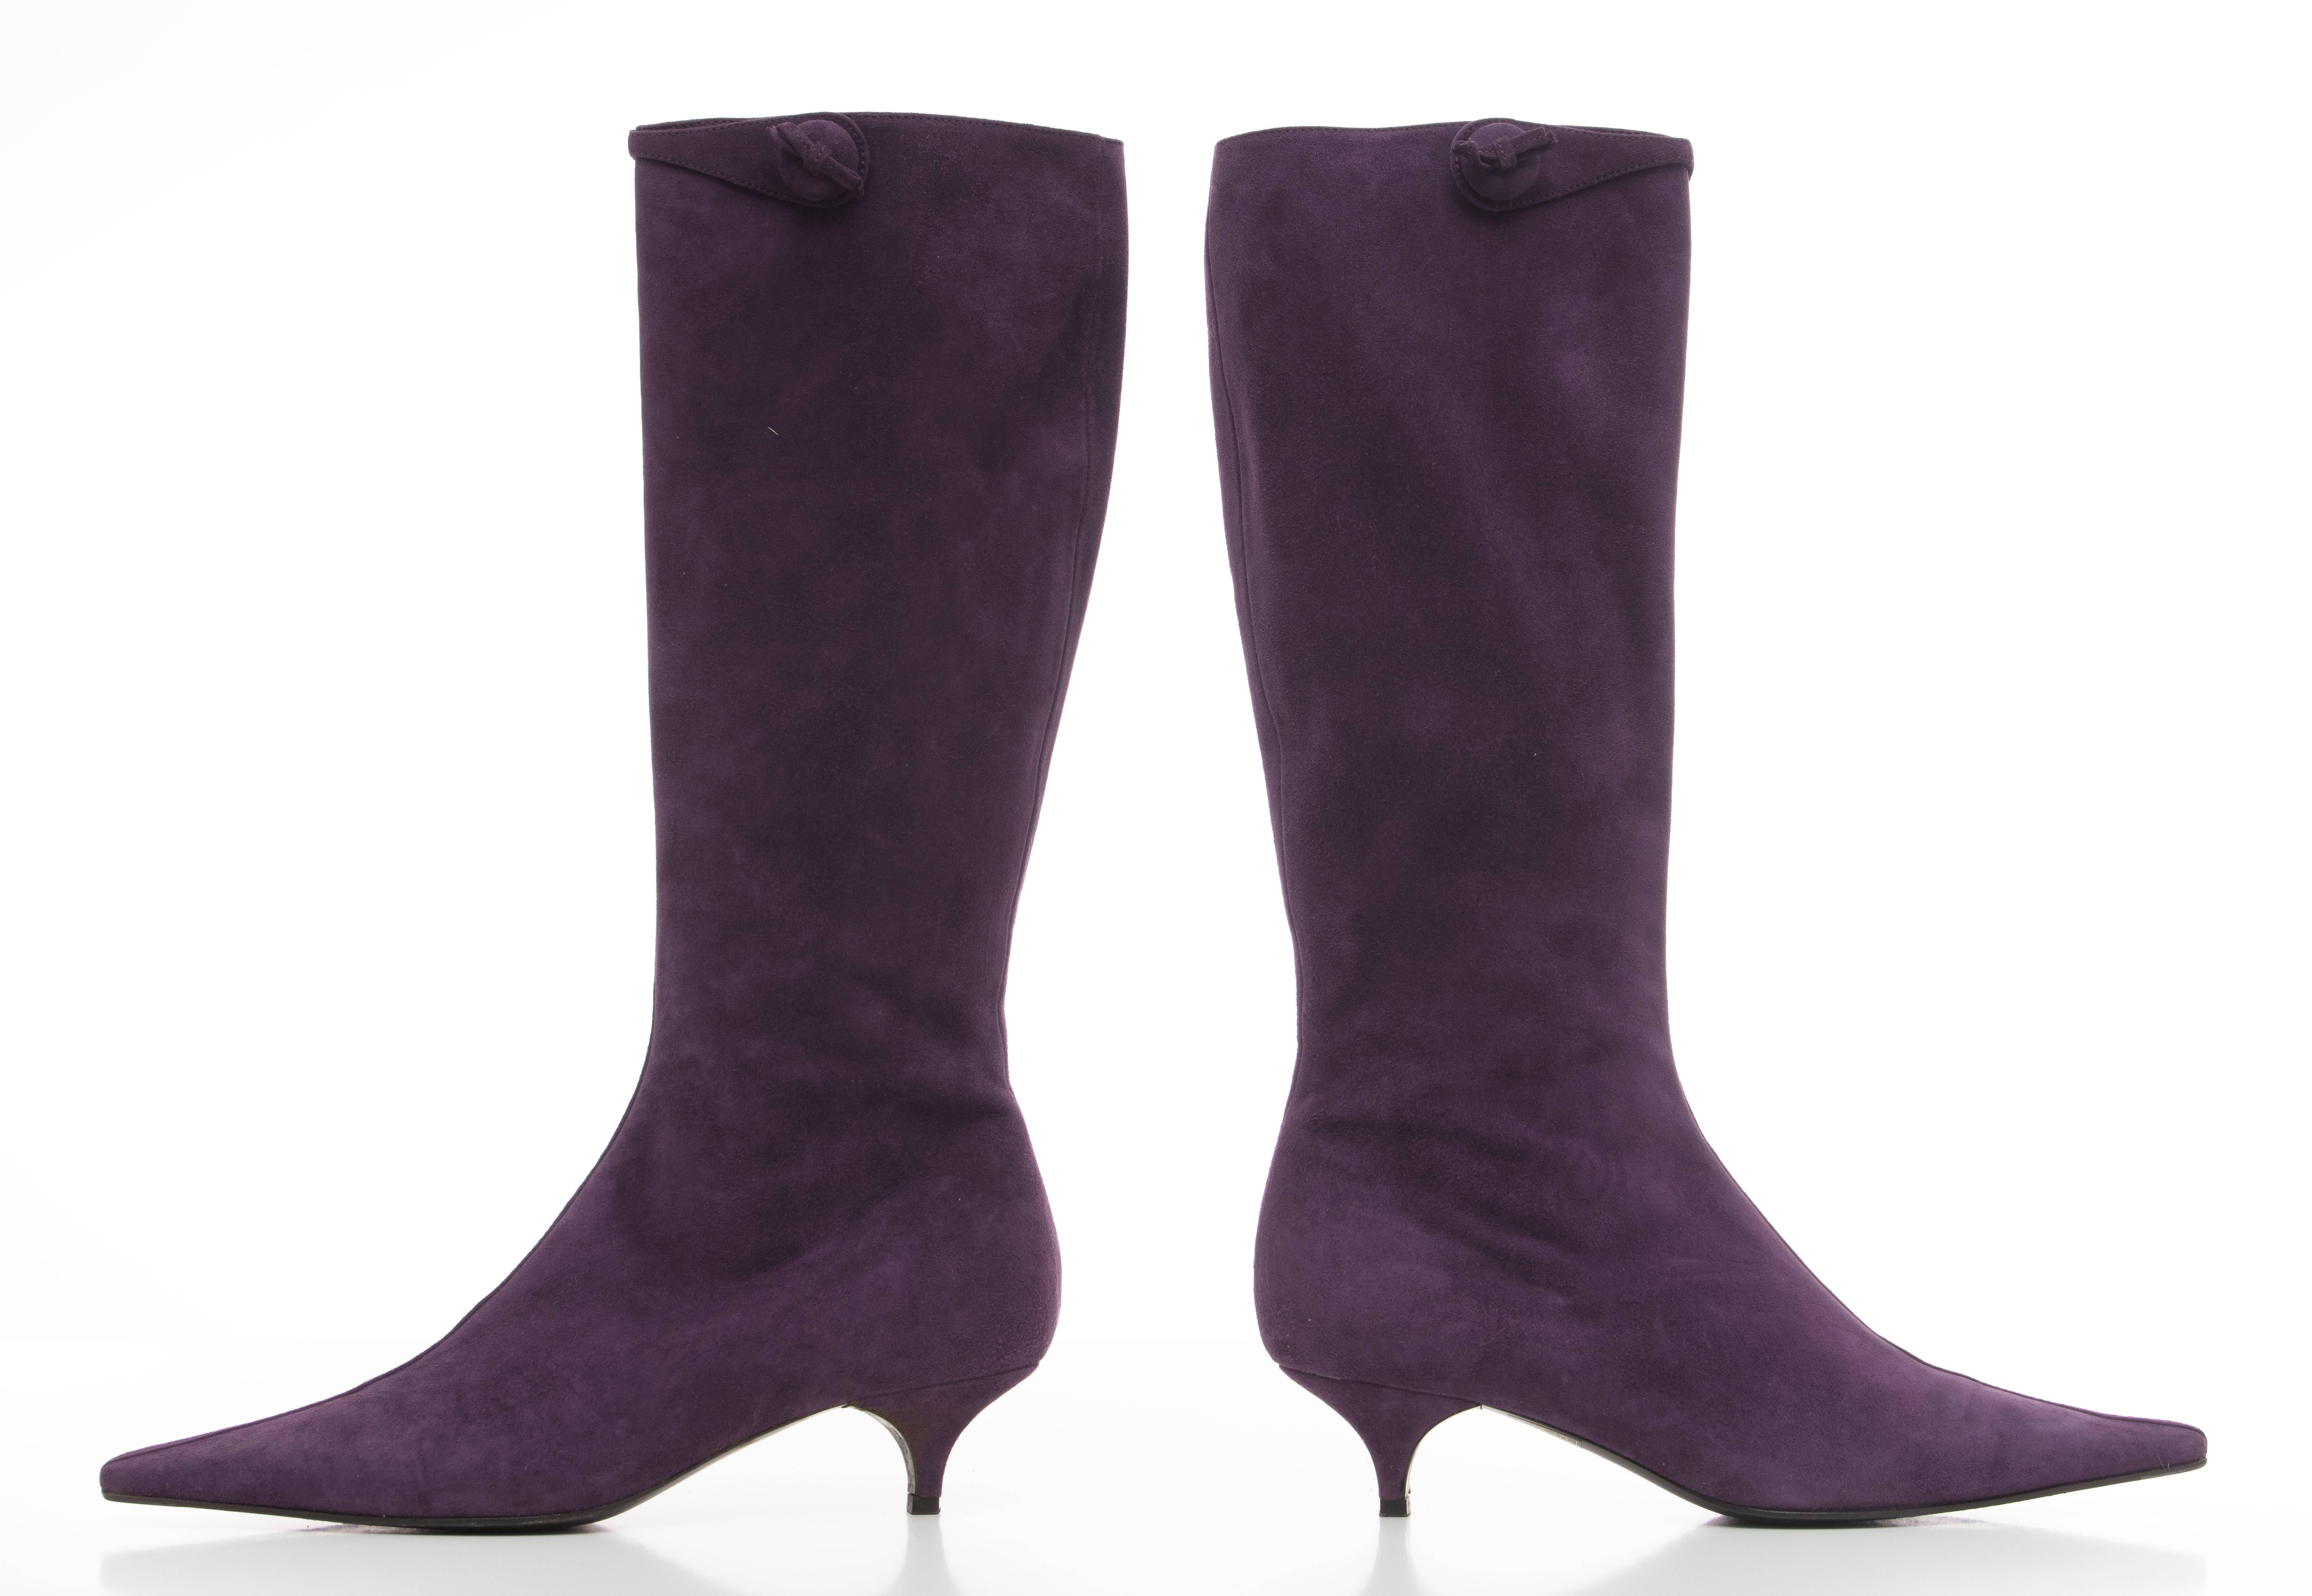 Prada amethyst suede kitten heel boots with side zip.

EU. 38.5
US. 8.5

Heel 1.5